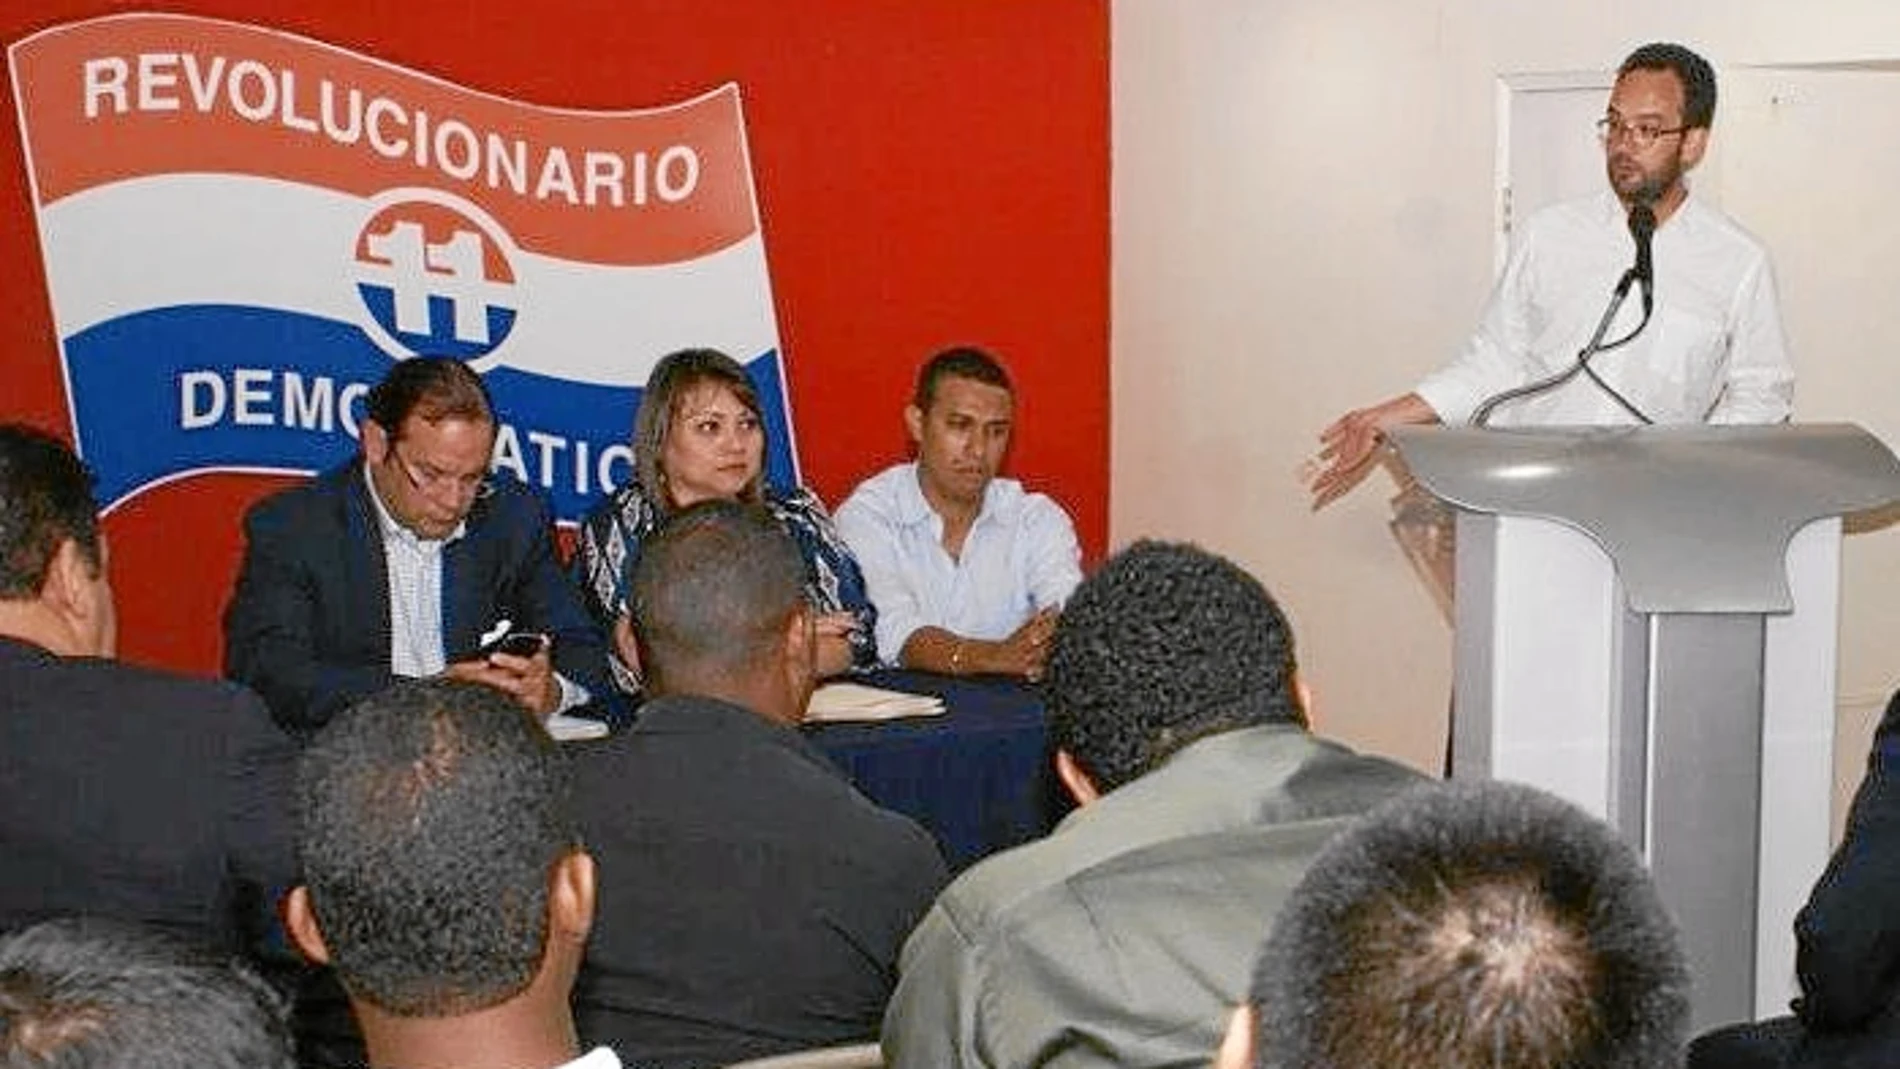 Antonio Hernando imparte una conferencia en Panamá en presencia de Jaime Martínez-Acha, primero por la izquierda